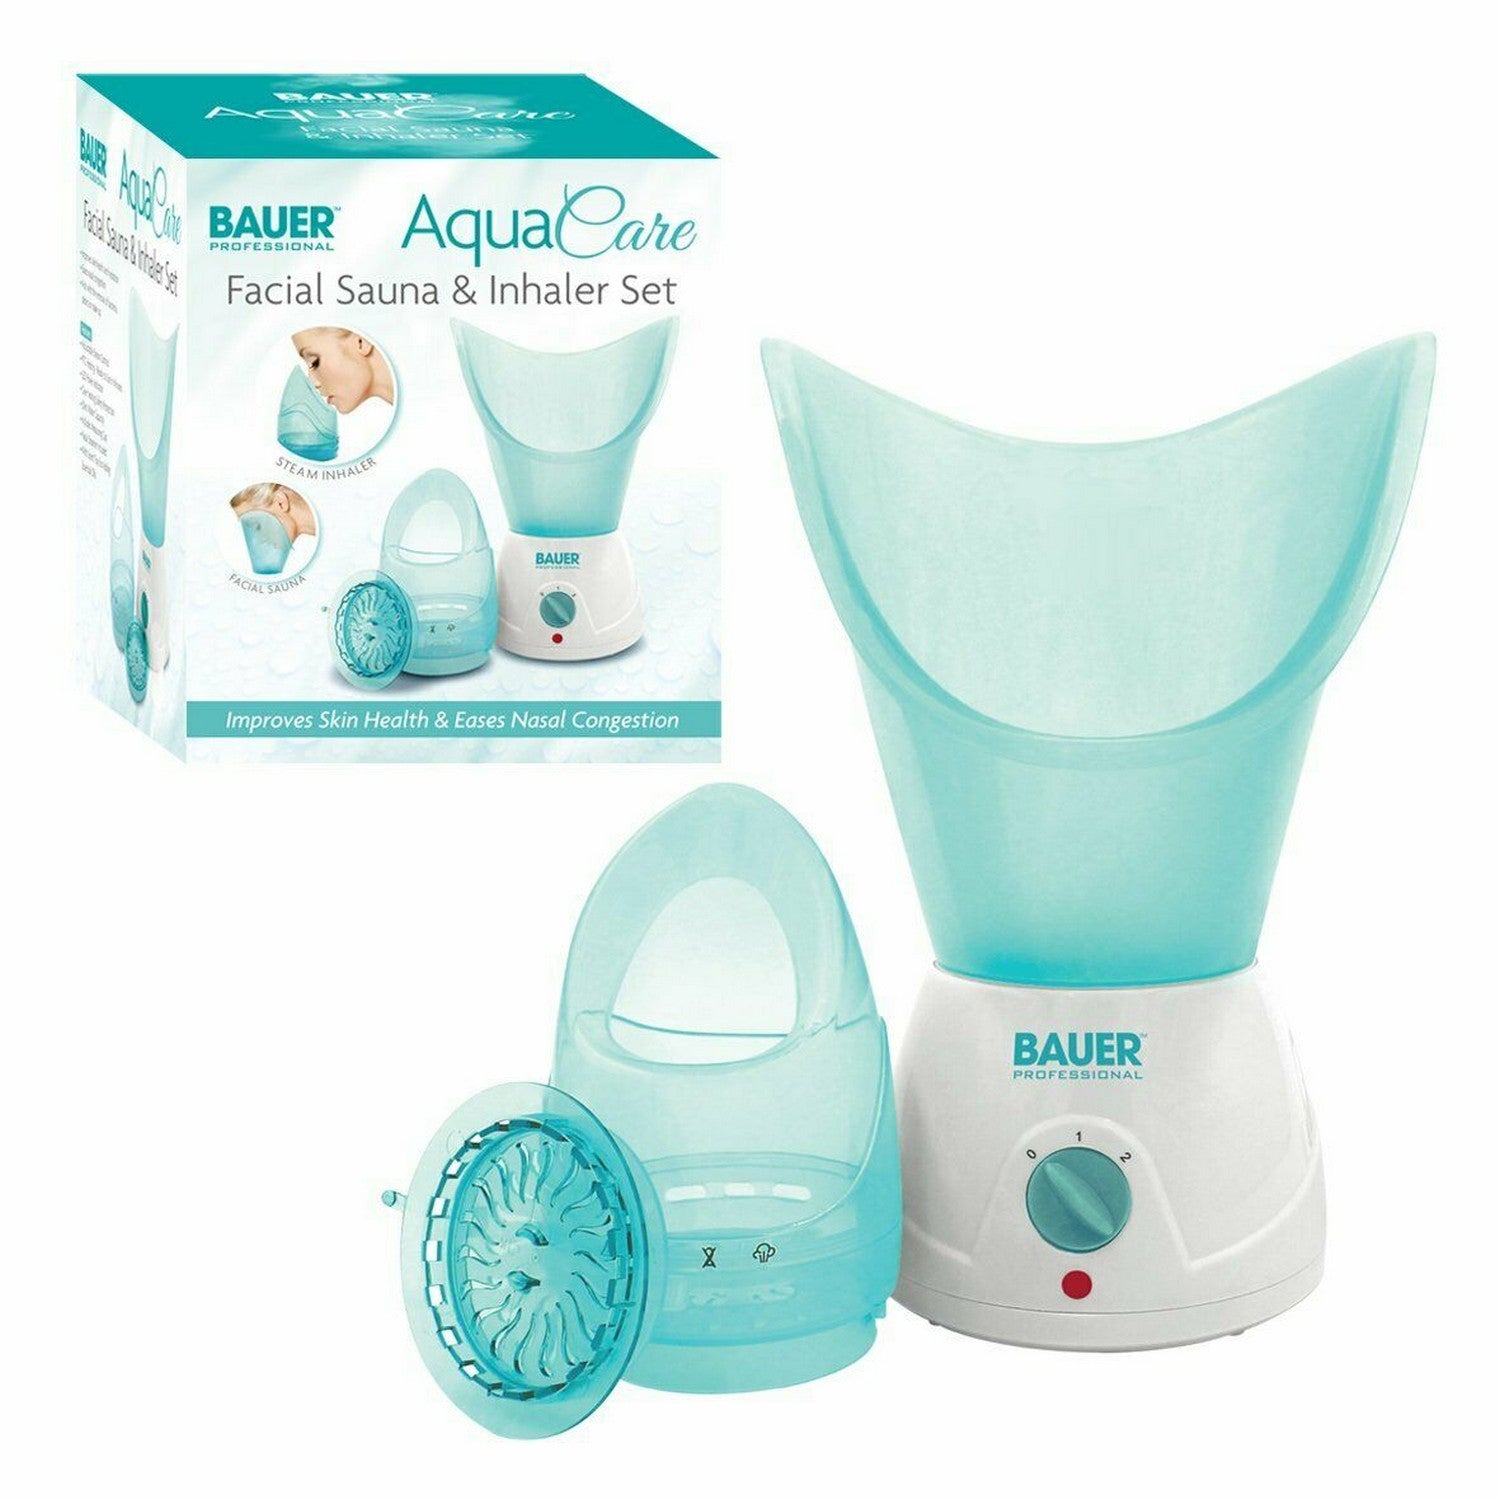 Bauer Aqua Care Facial Sauna & Inhaler Set